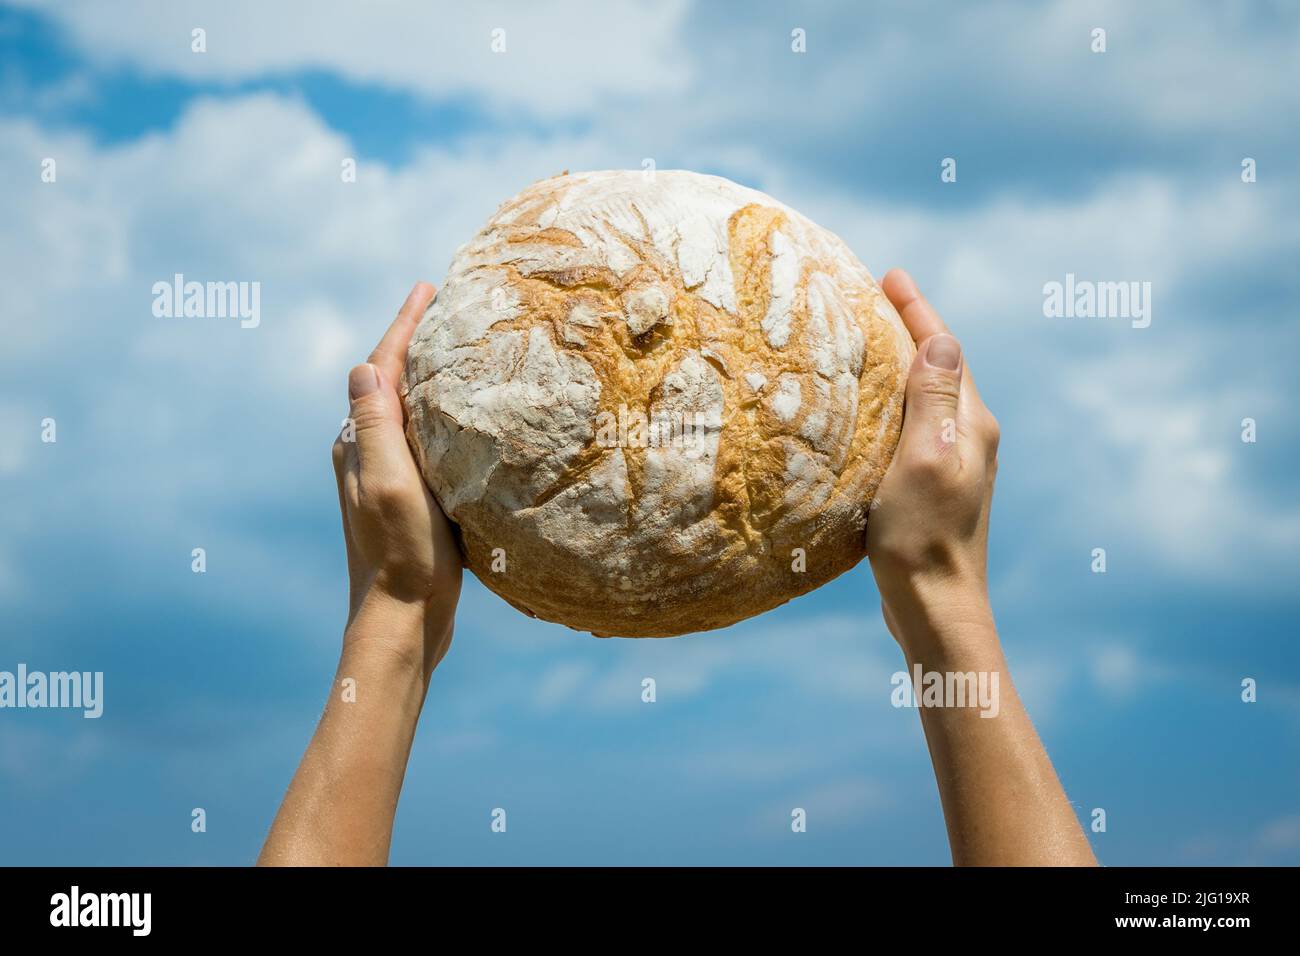 Les mains des femmes tenant le pain cuit maison au-dessus de sa tête sur un ciel bleu d'été. Concept de sécurité alimentaire mondiale. Banque D'Images